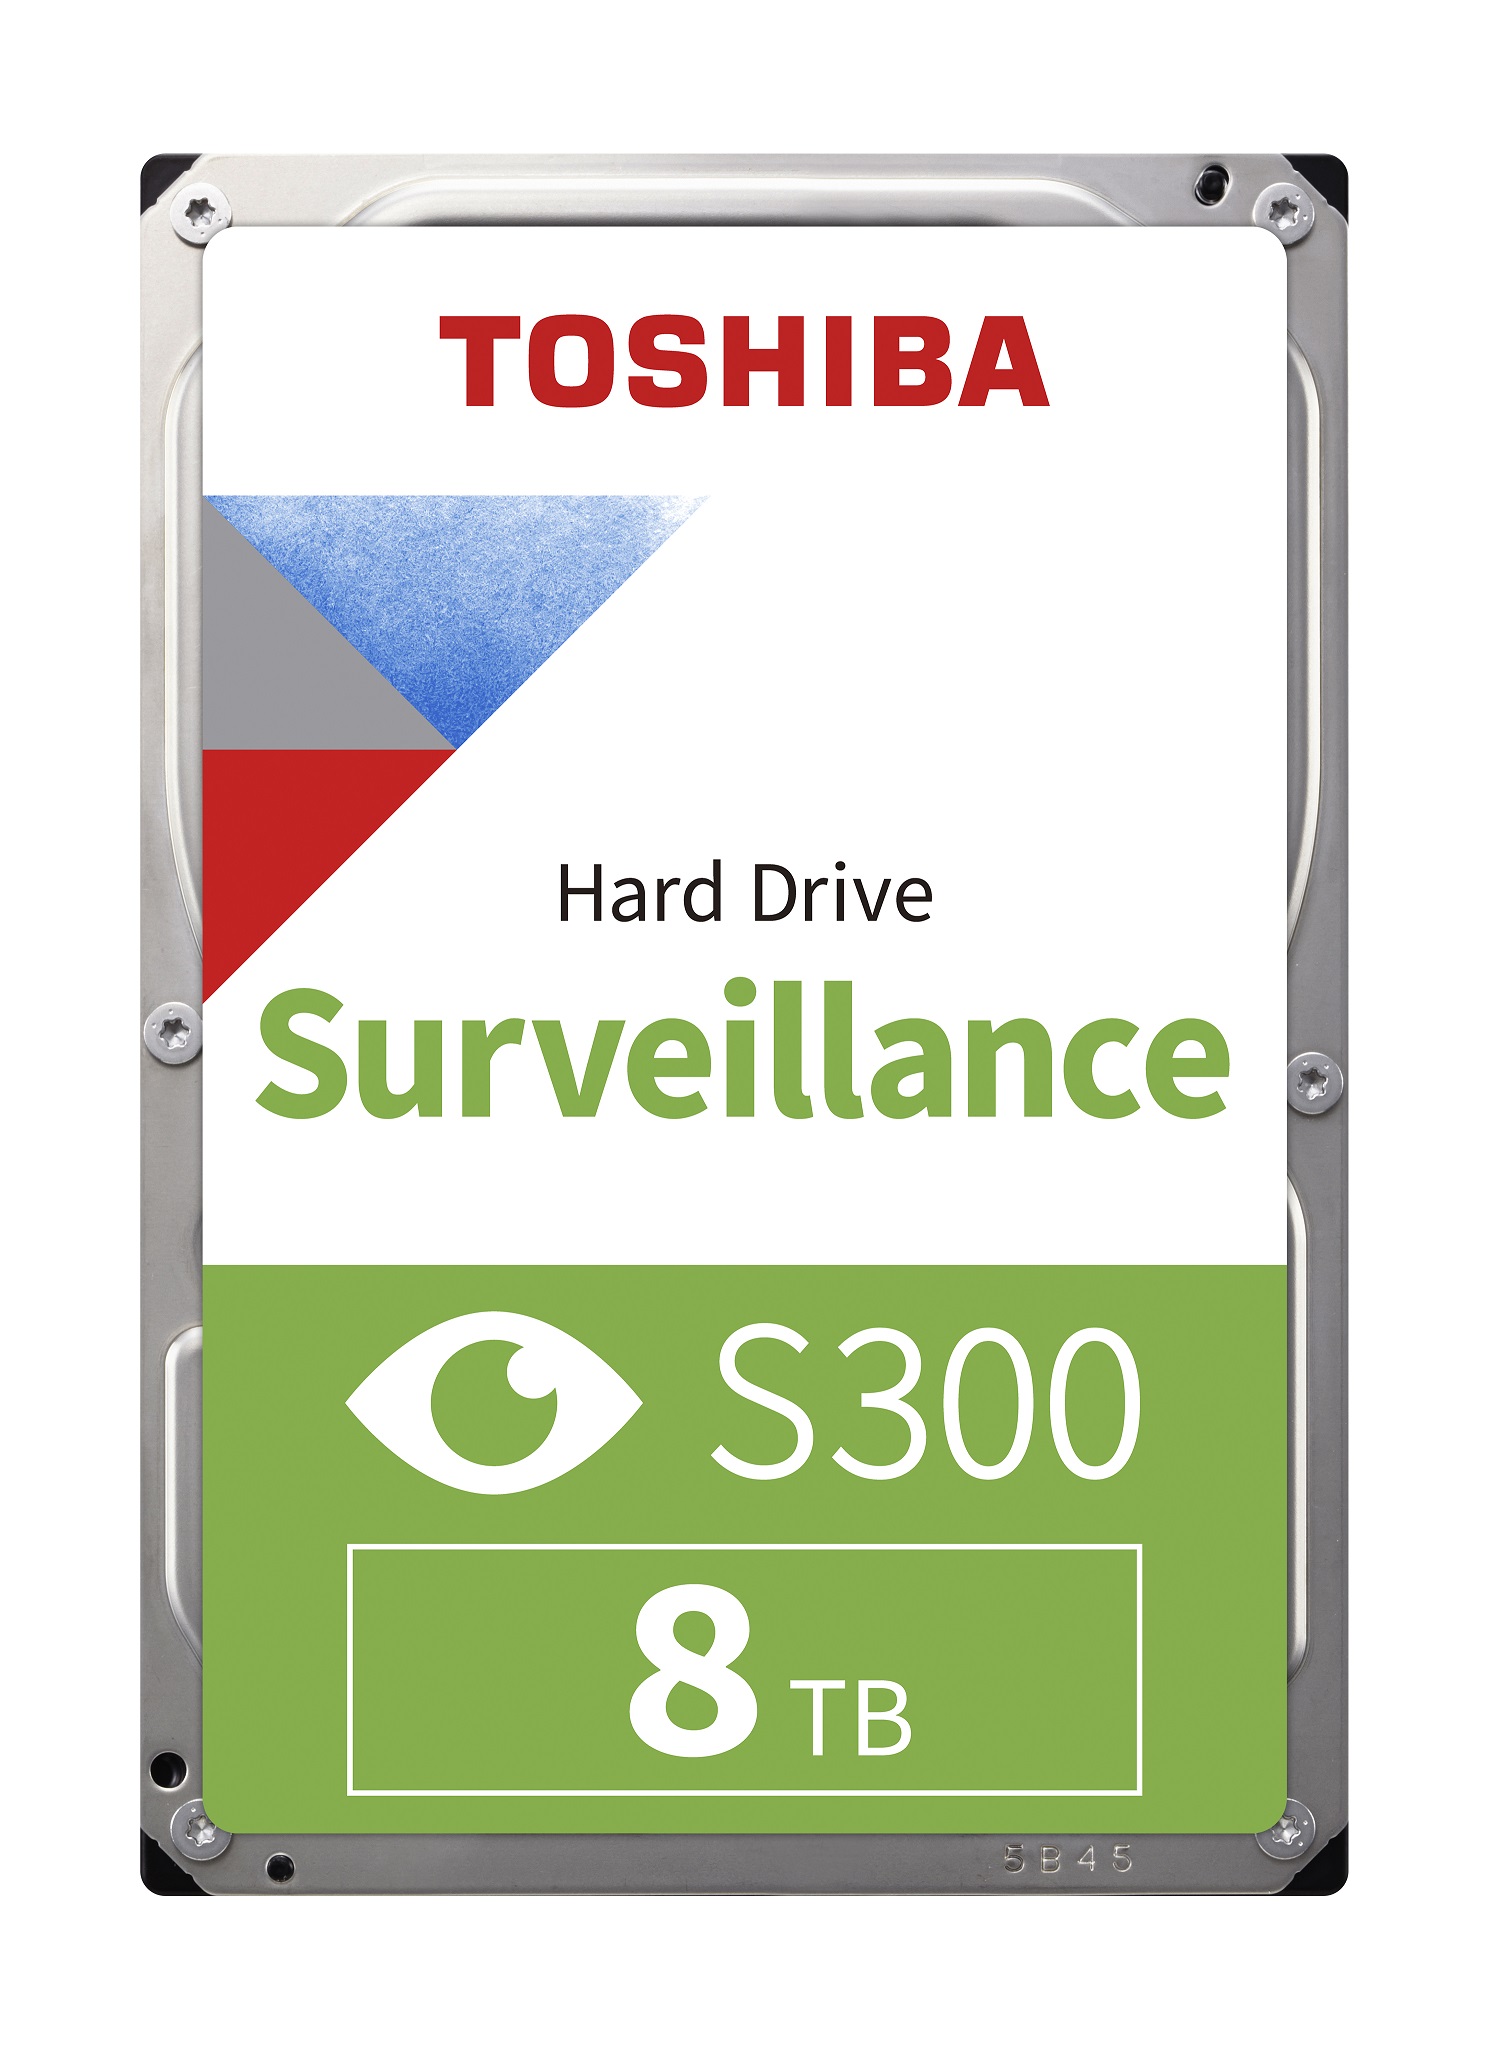 TOSHIBA S300 PRO 8 TB 7200RPM 256MB SATA3 180TB/Y 7/24 (HDWT380UZSVA)